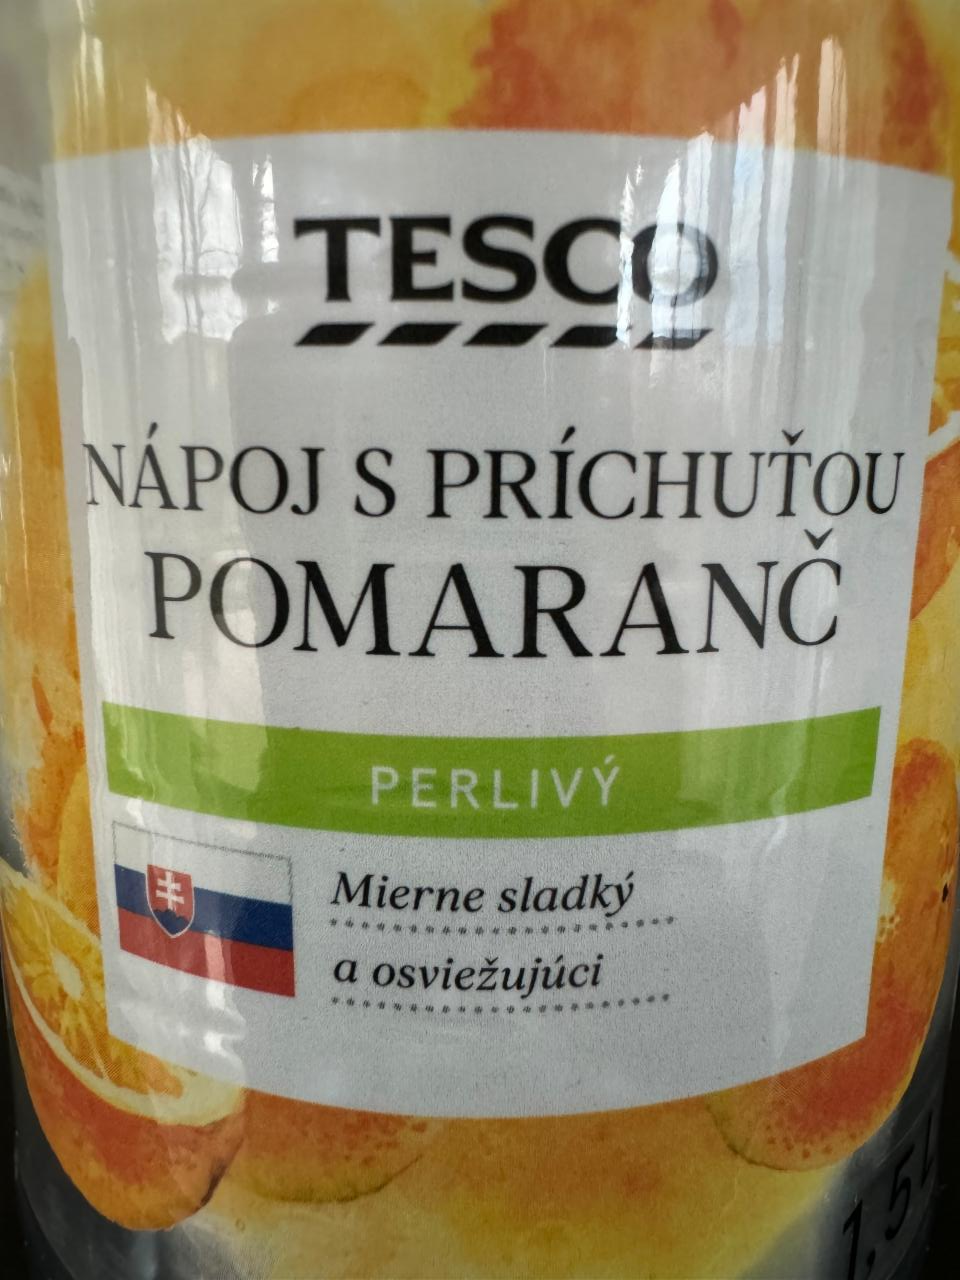 Fotografie - Nápoj s príchuťou pomaranč perlivý Tesco